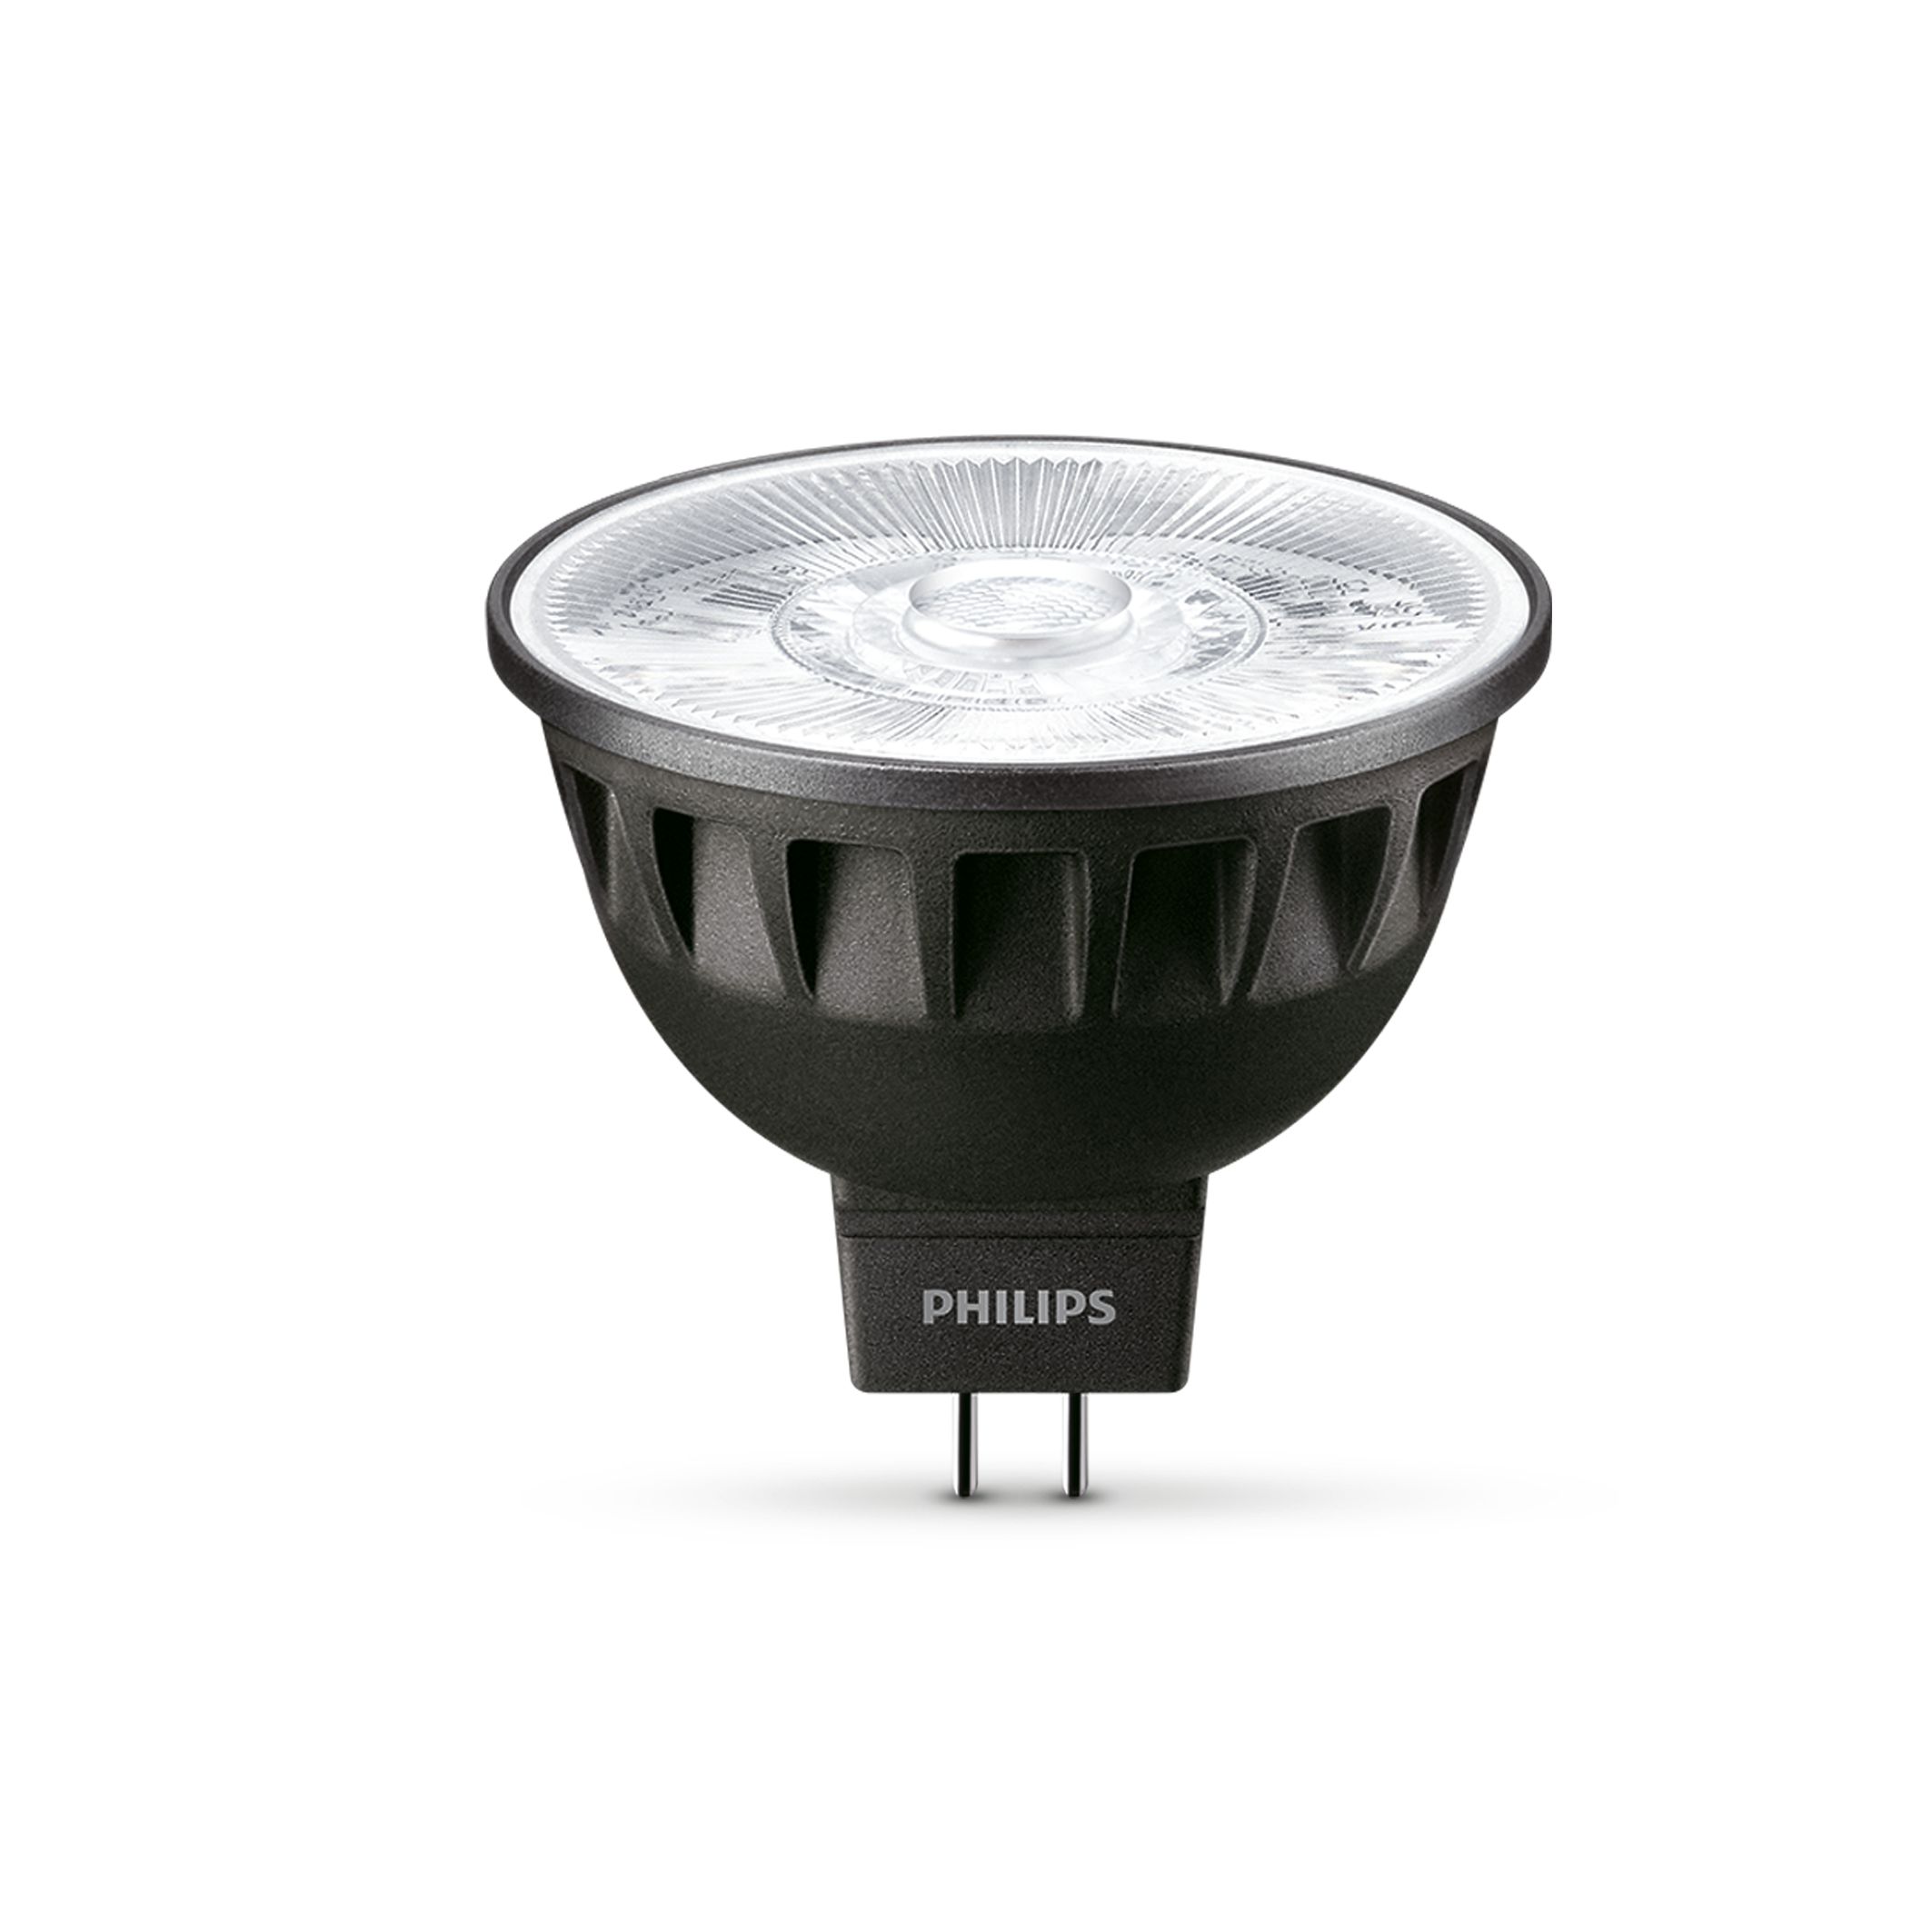 LED MR16 7403037 Philips lighting